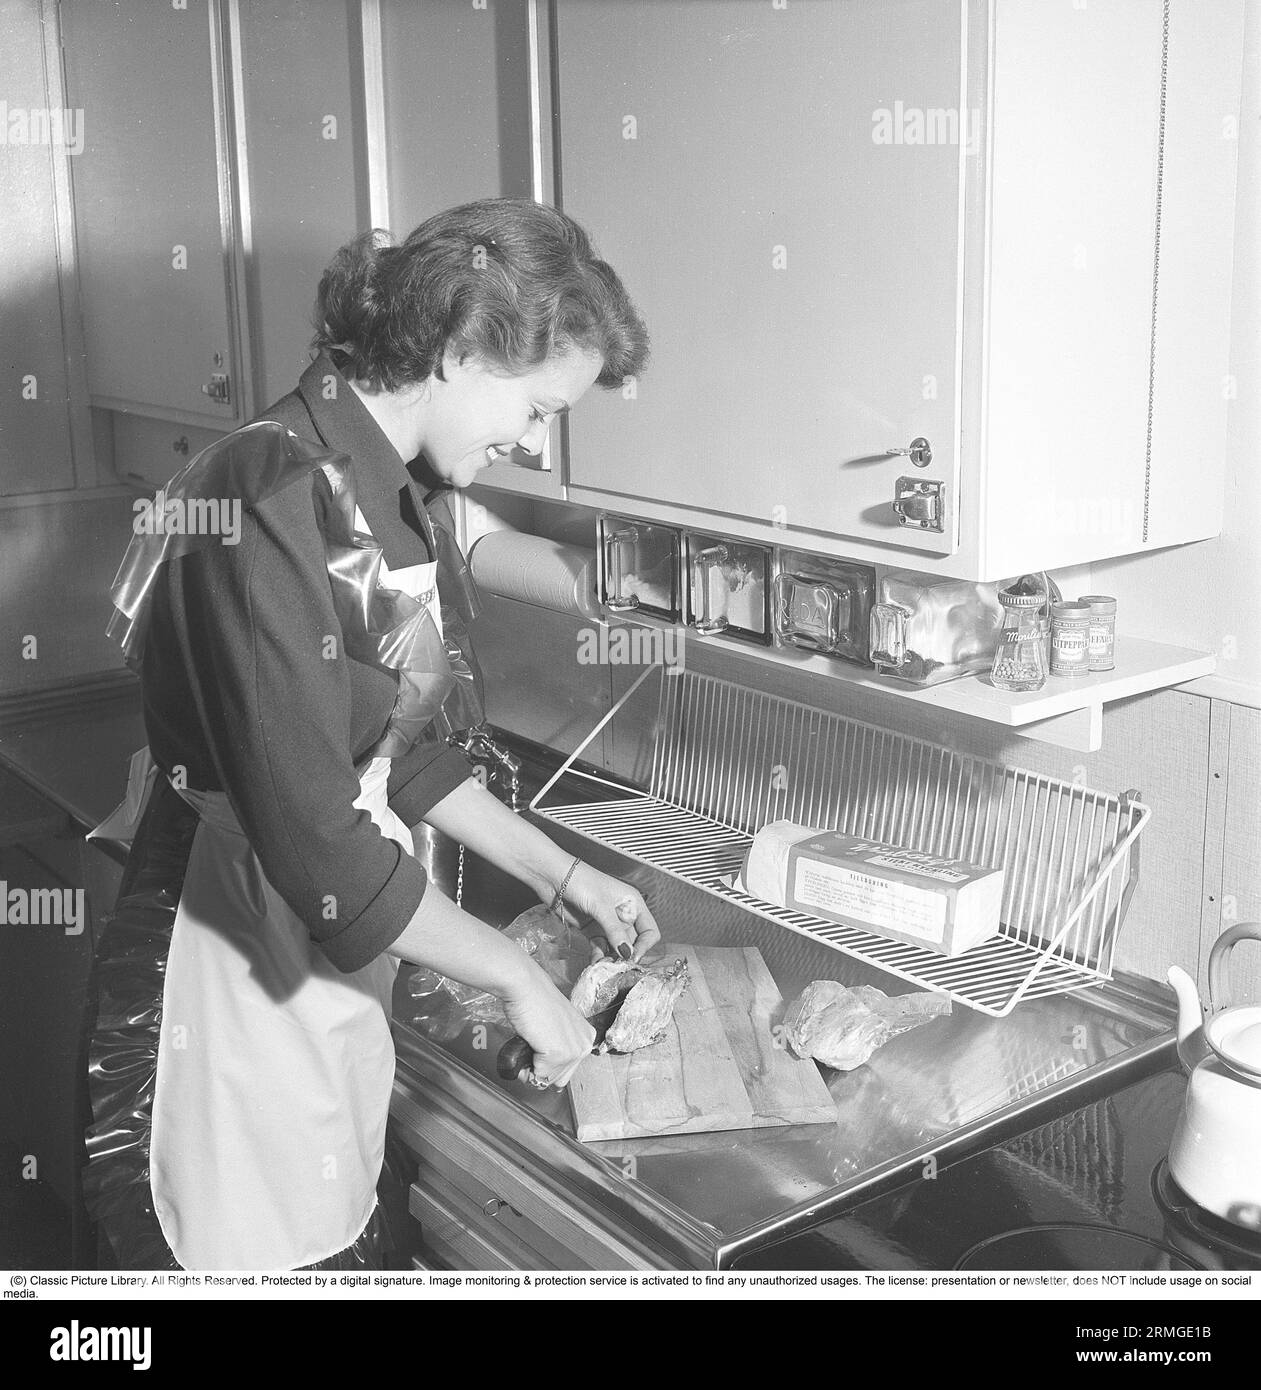 In der Küche der 1950er Das Innere einer Küche und eine junge Frau, die am Spülbecken steht und die Zutaten zubereitet. Sie trägt eine Plastikschürze. Sie ist Haide Göransson, 1928–2008, Modemodel und Schauspielerin. Schweden 1950 Kristoffersson ref AU23-2 Stockfoto